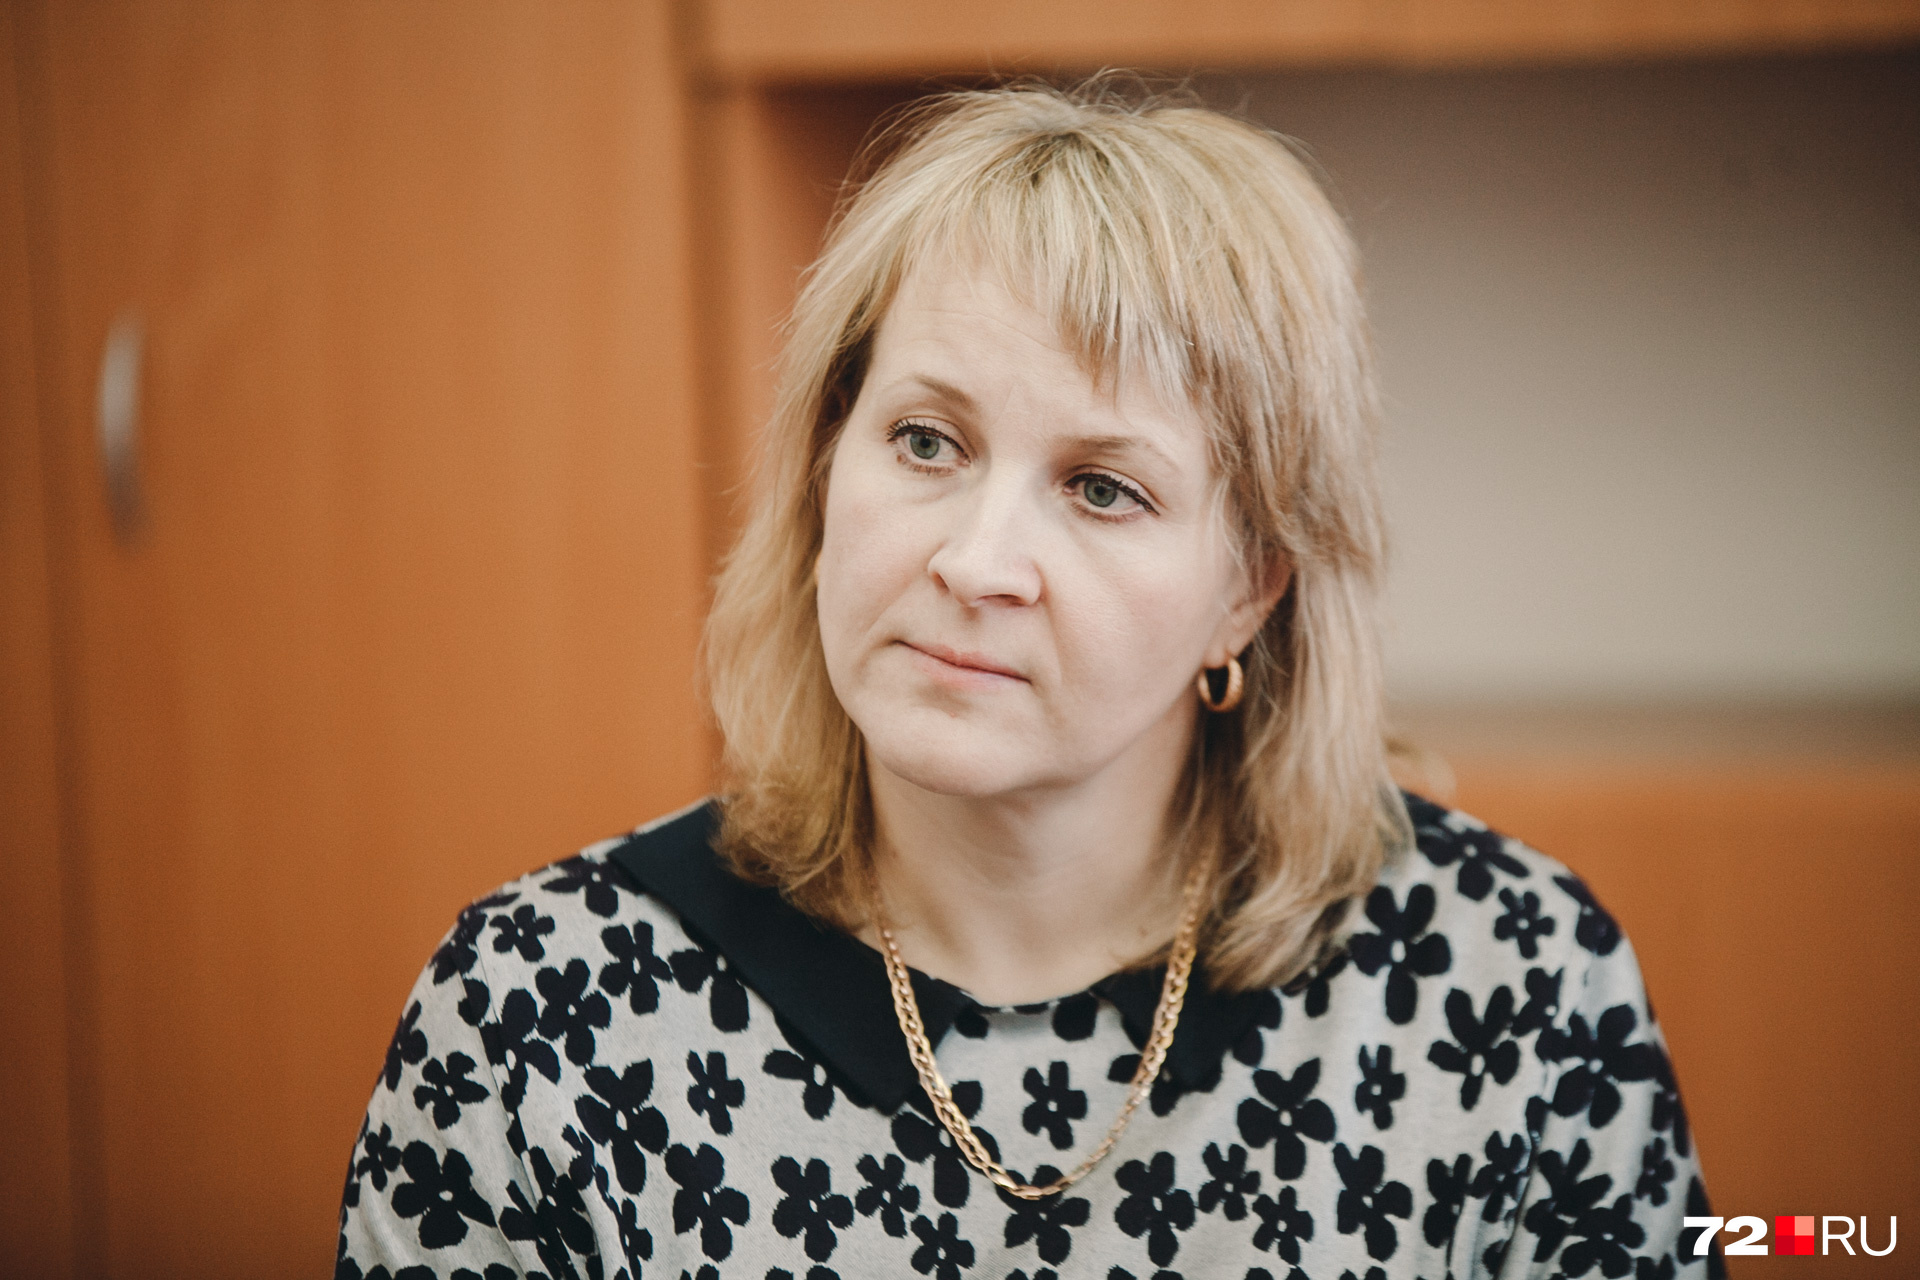 Директор винзилинской школы Алёны Филоненко говорит, что пока не видит никаких оснований для увольнения заслуженного учителя 